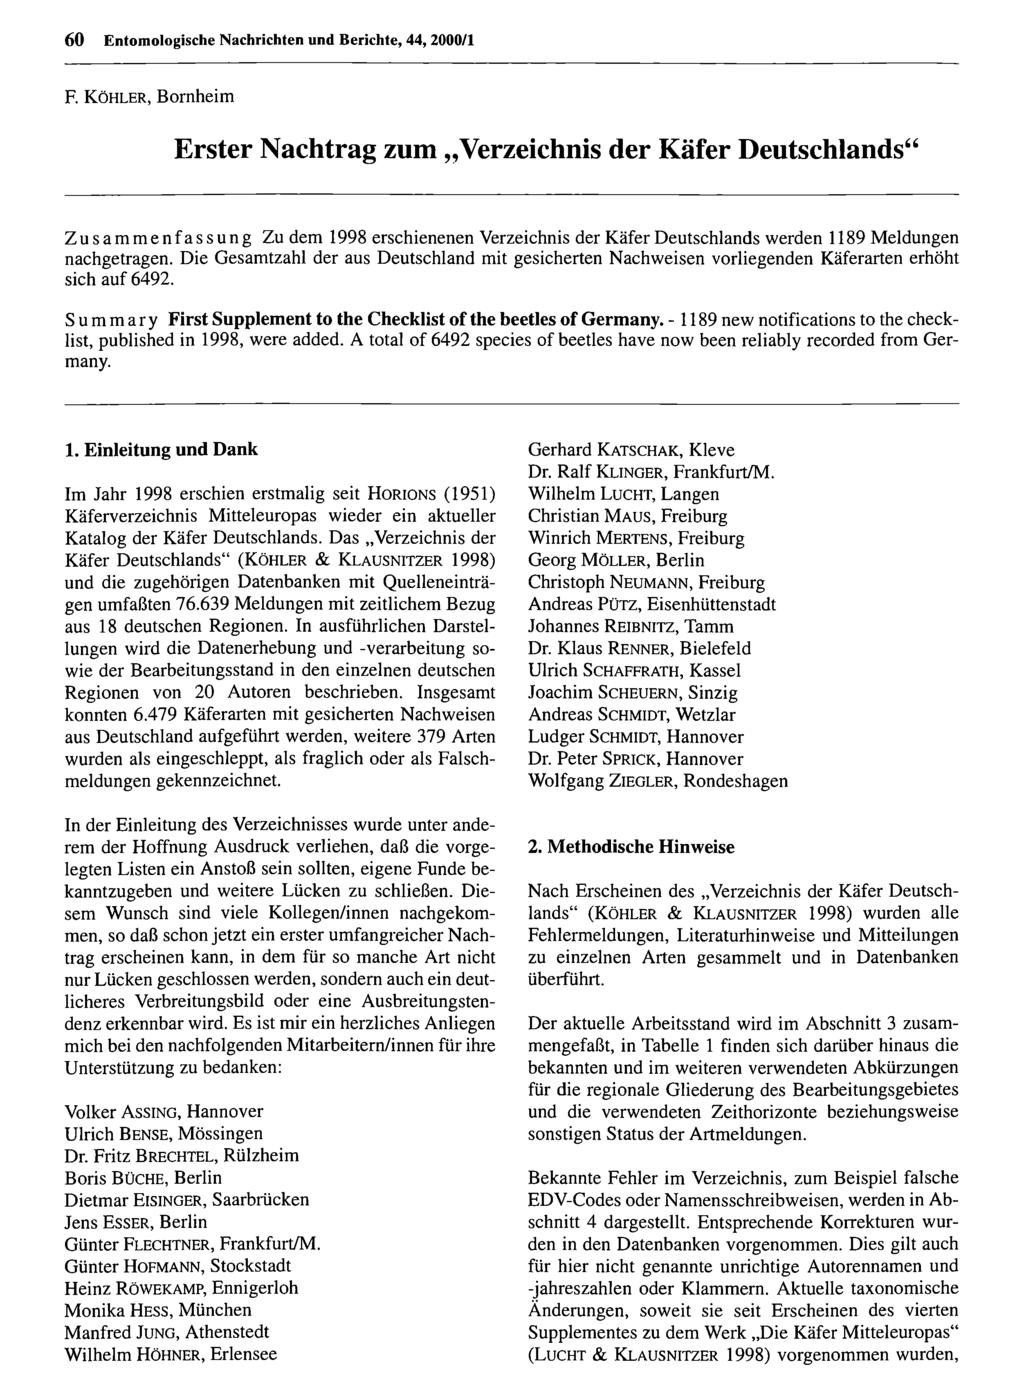 60 Entomologische Nachrichten Entomologische und Berichte, Nachrichten 44, 2000/1 und Berichte; download unter www.biologiezentrum.at F.